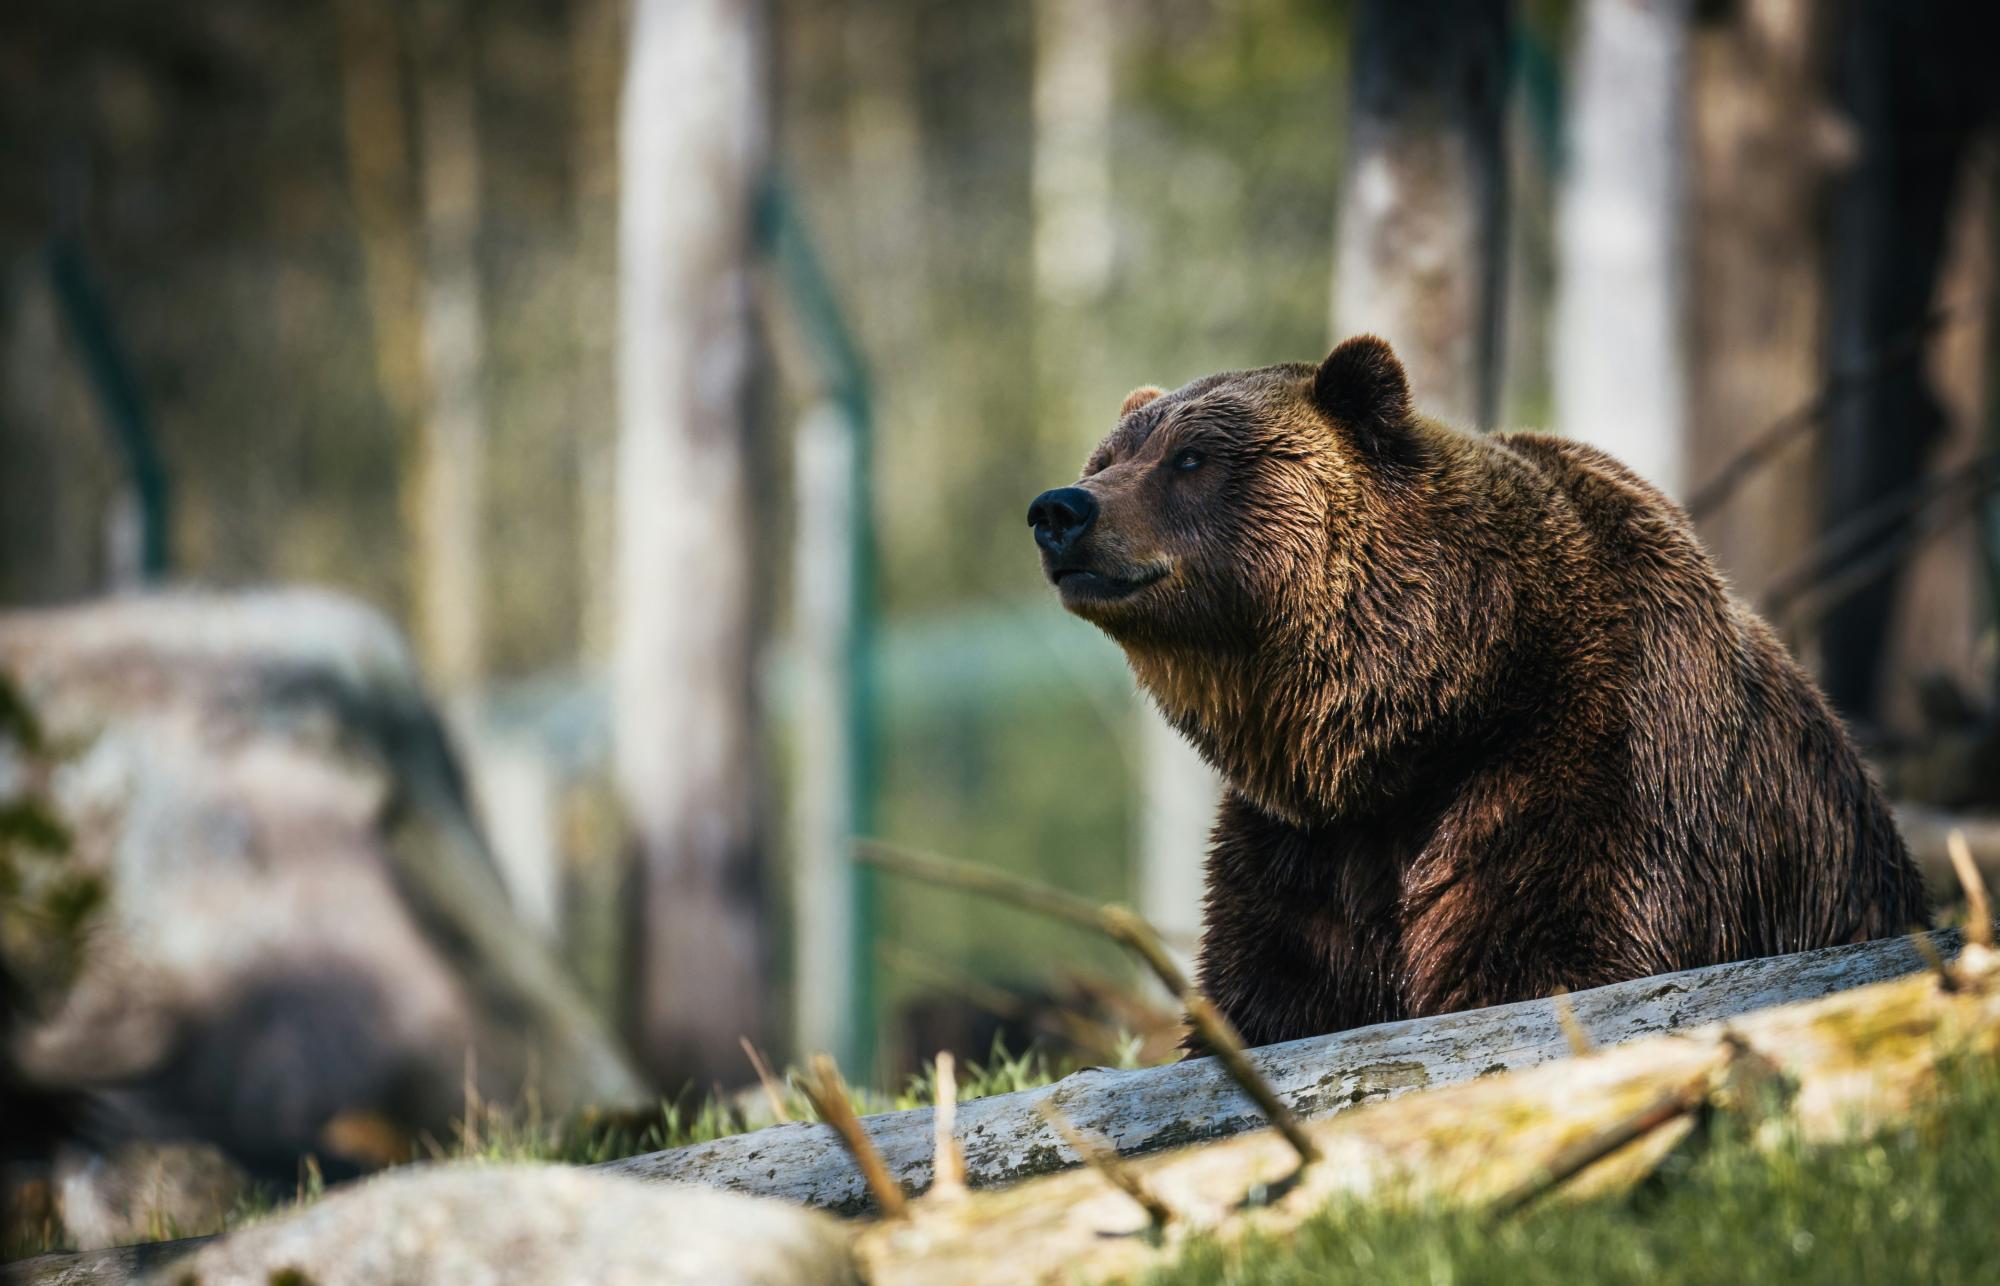 Tourist in Italien bei Spaziergang von Bären angegriffen